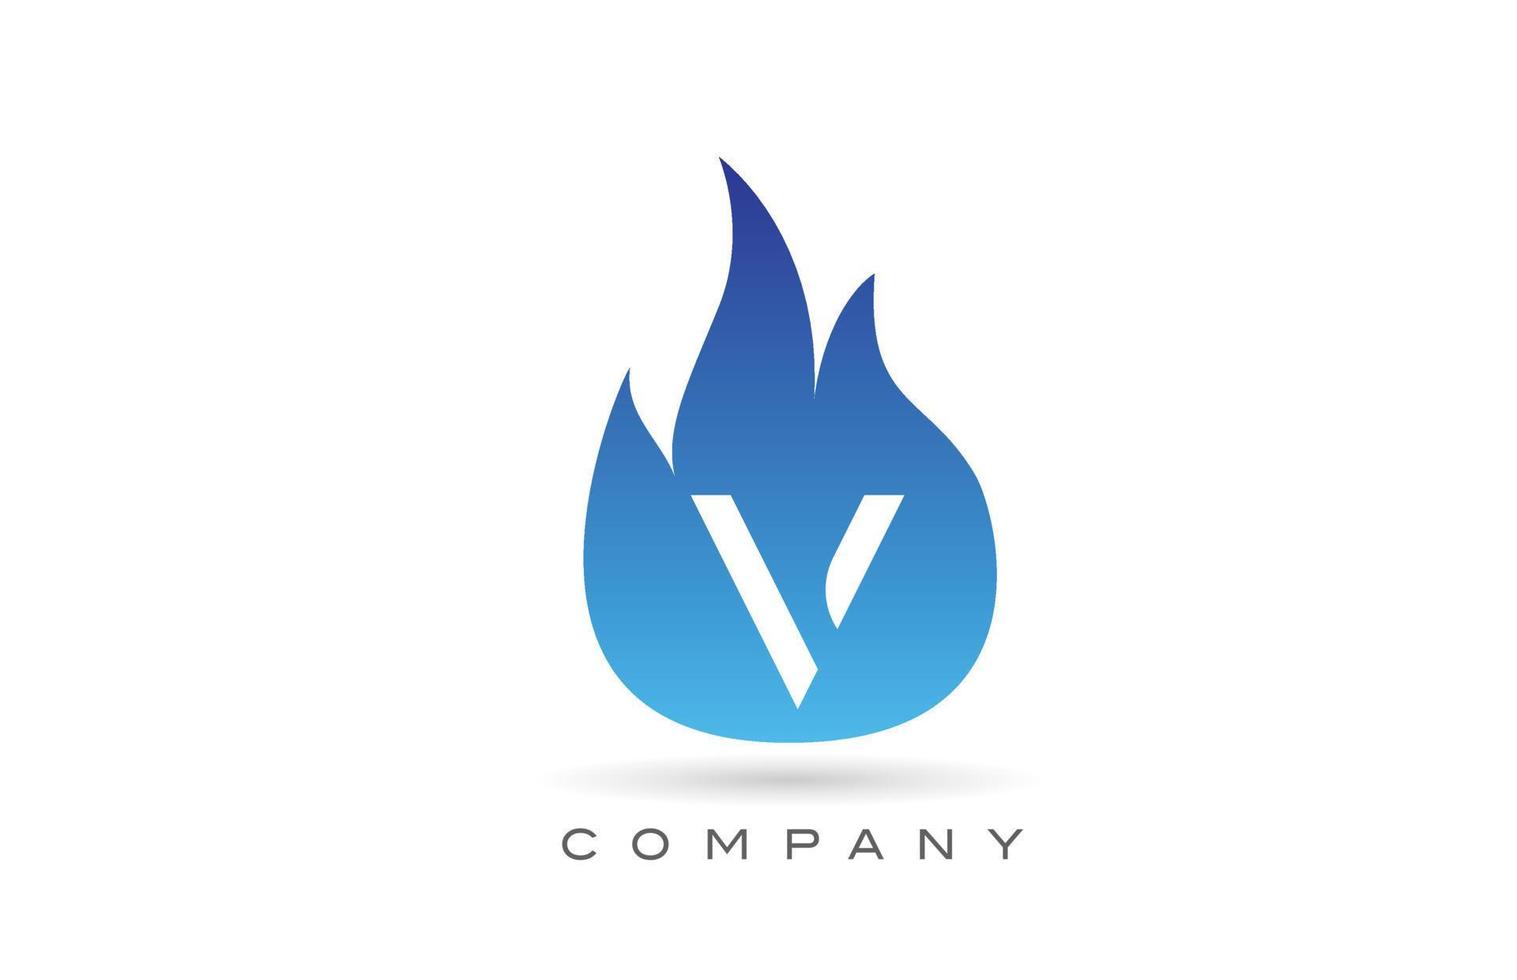 v diseño de logotipo de letra del alfabeto de llamas de fuego azul. plantilla de icono creativo para empresa y negocio vector